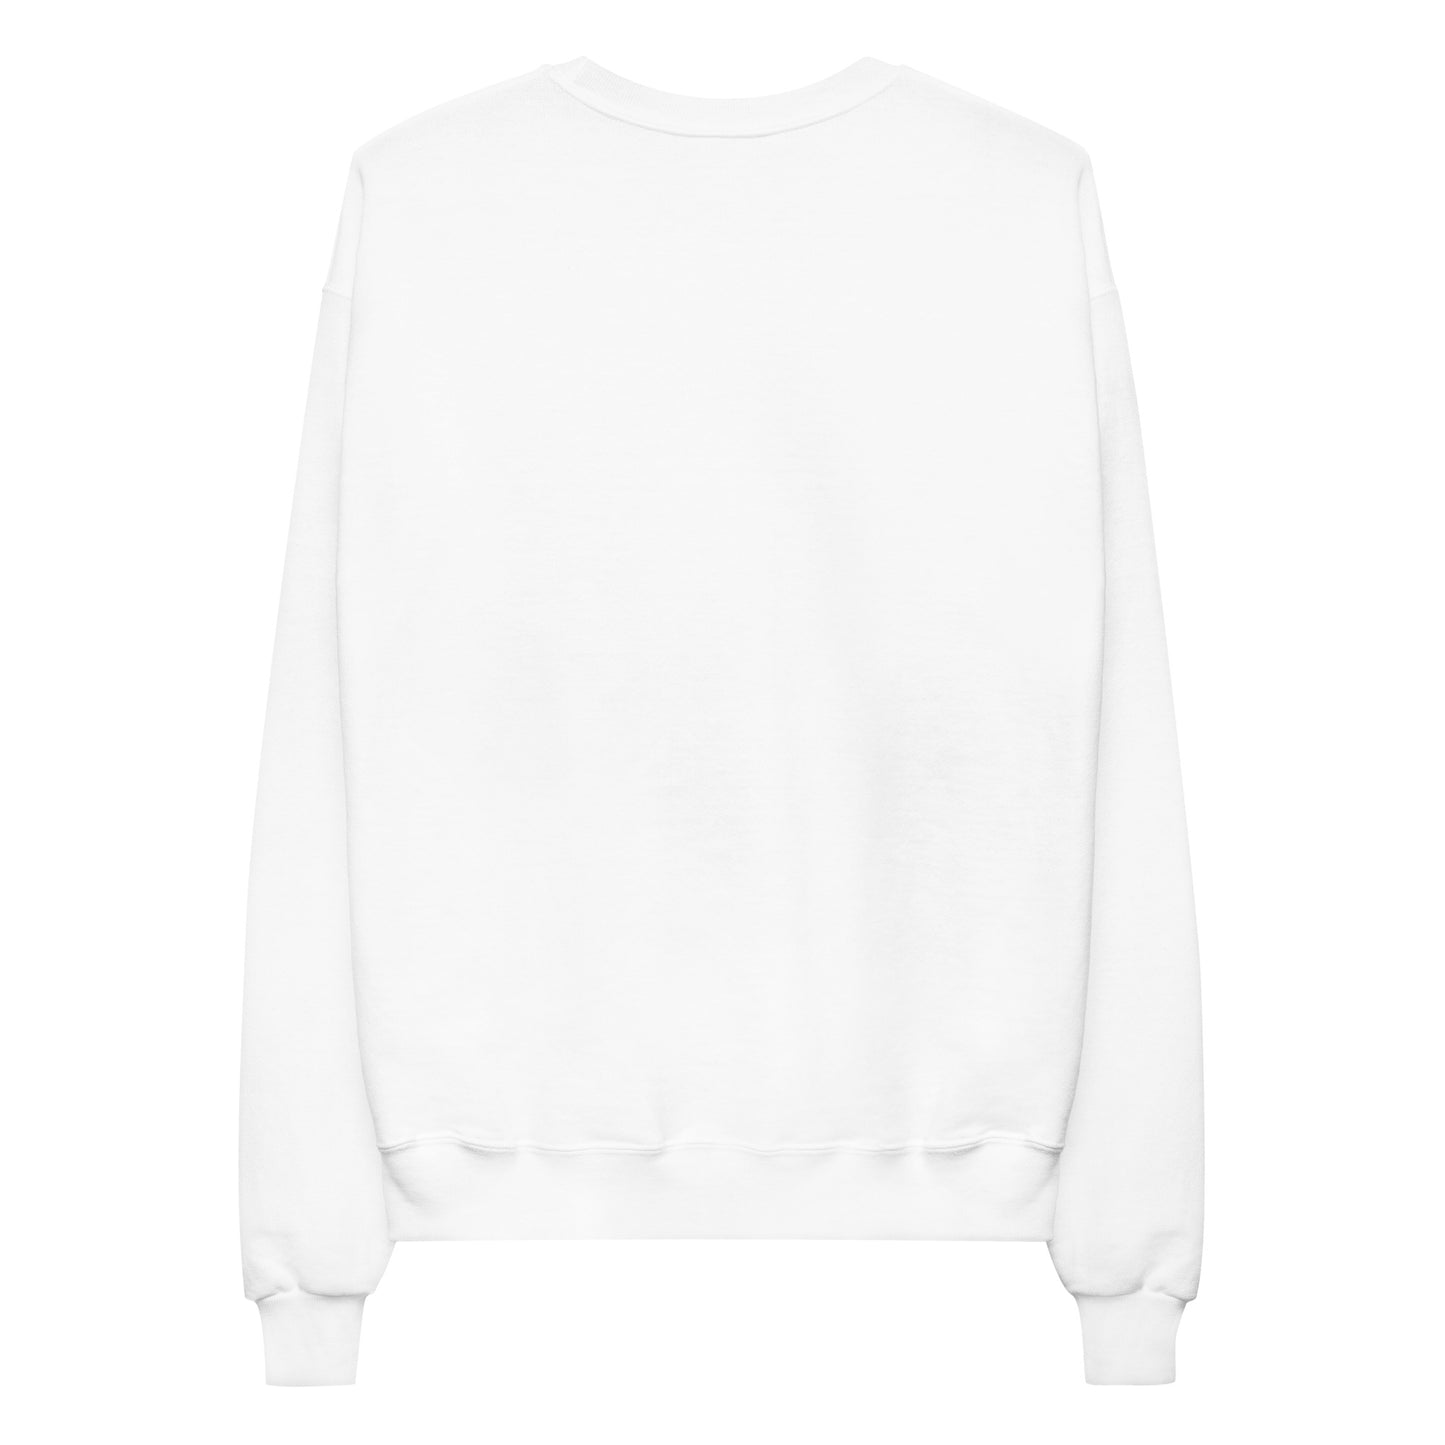 All Kinds Of Love Unisex Fleece Sweatshirt